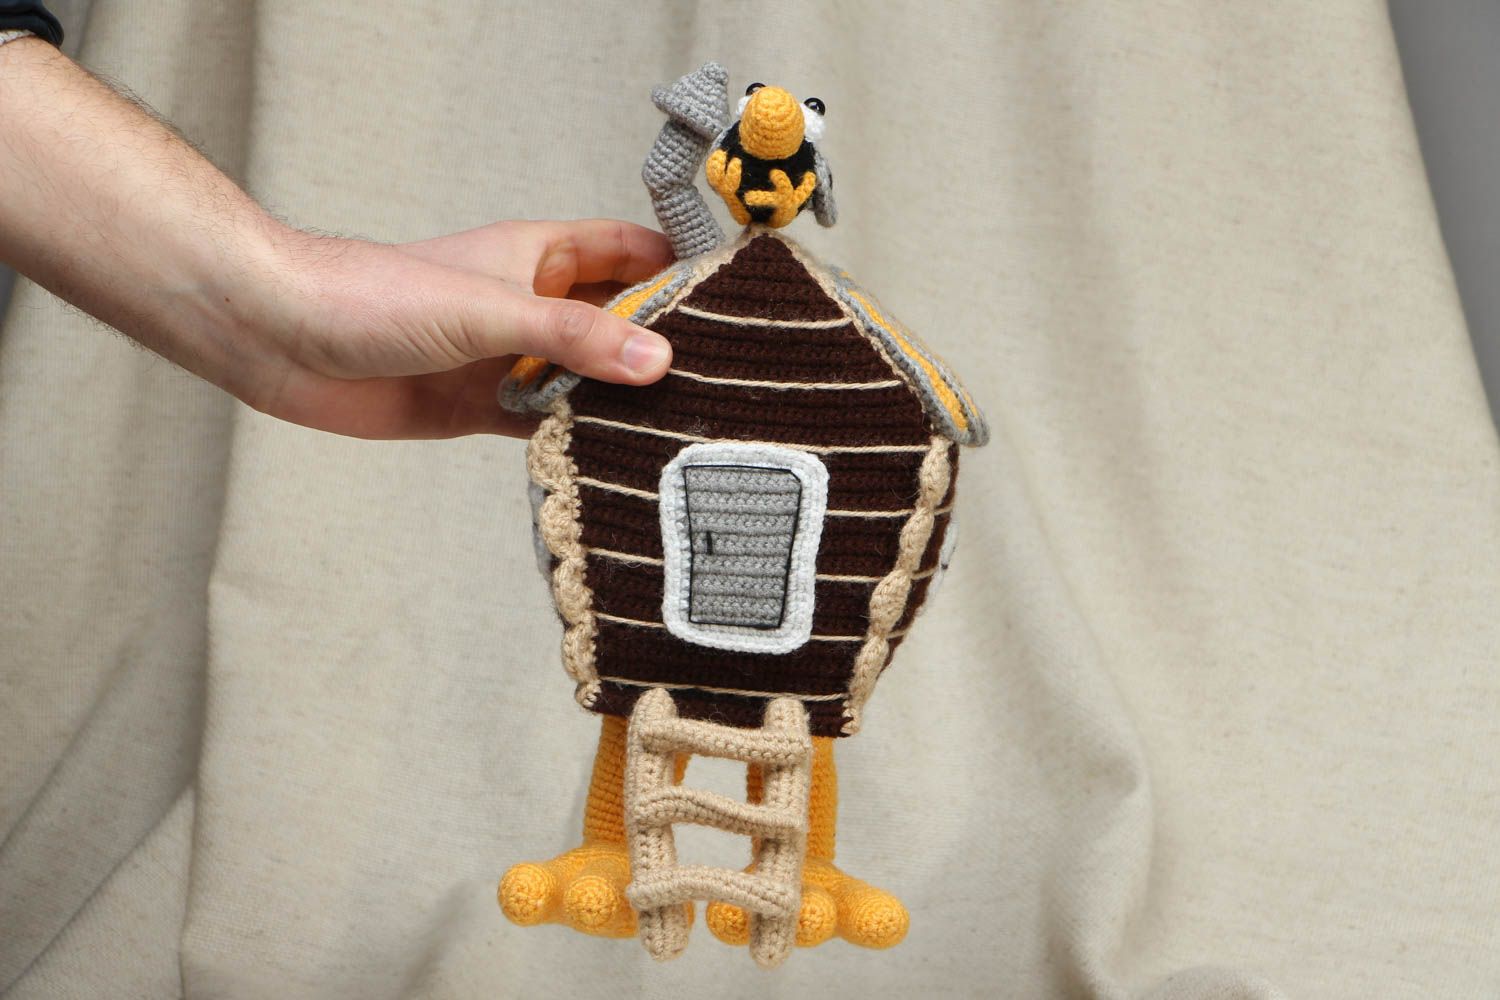 Designer crochet toy Hut on Chicken Legs photo 4